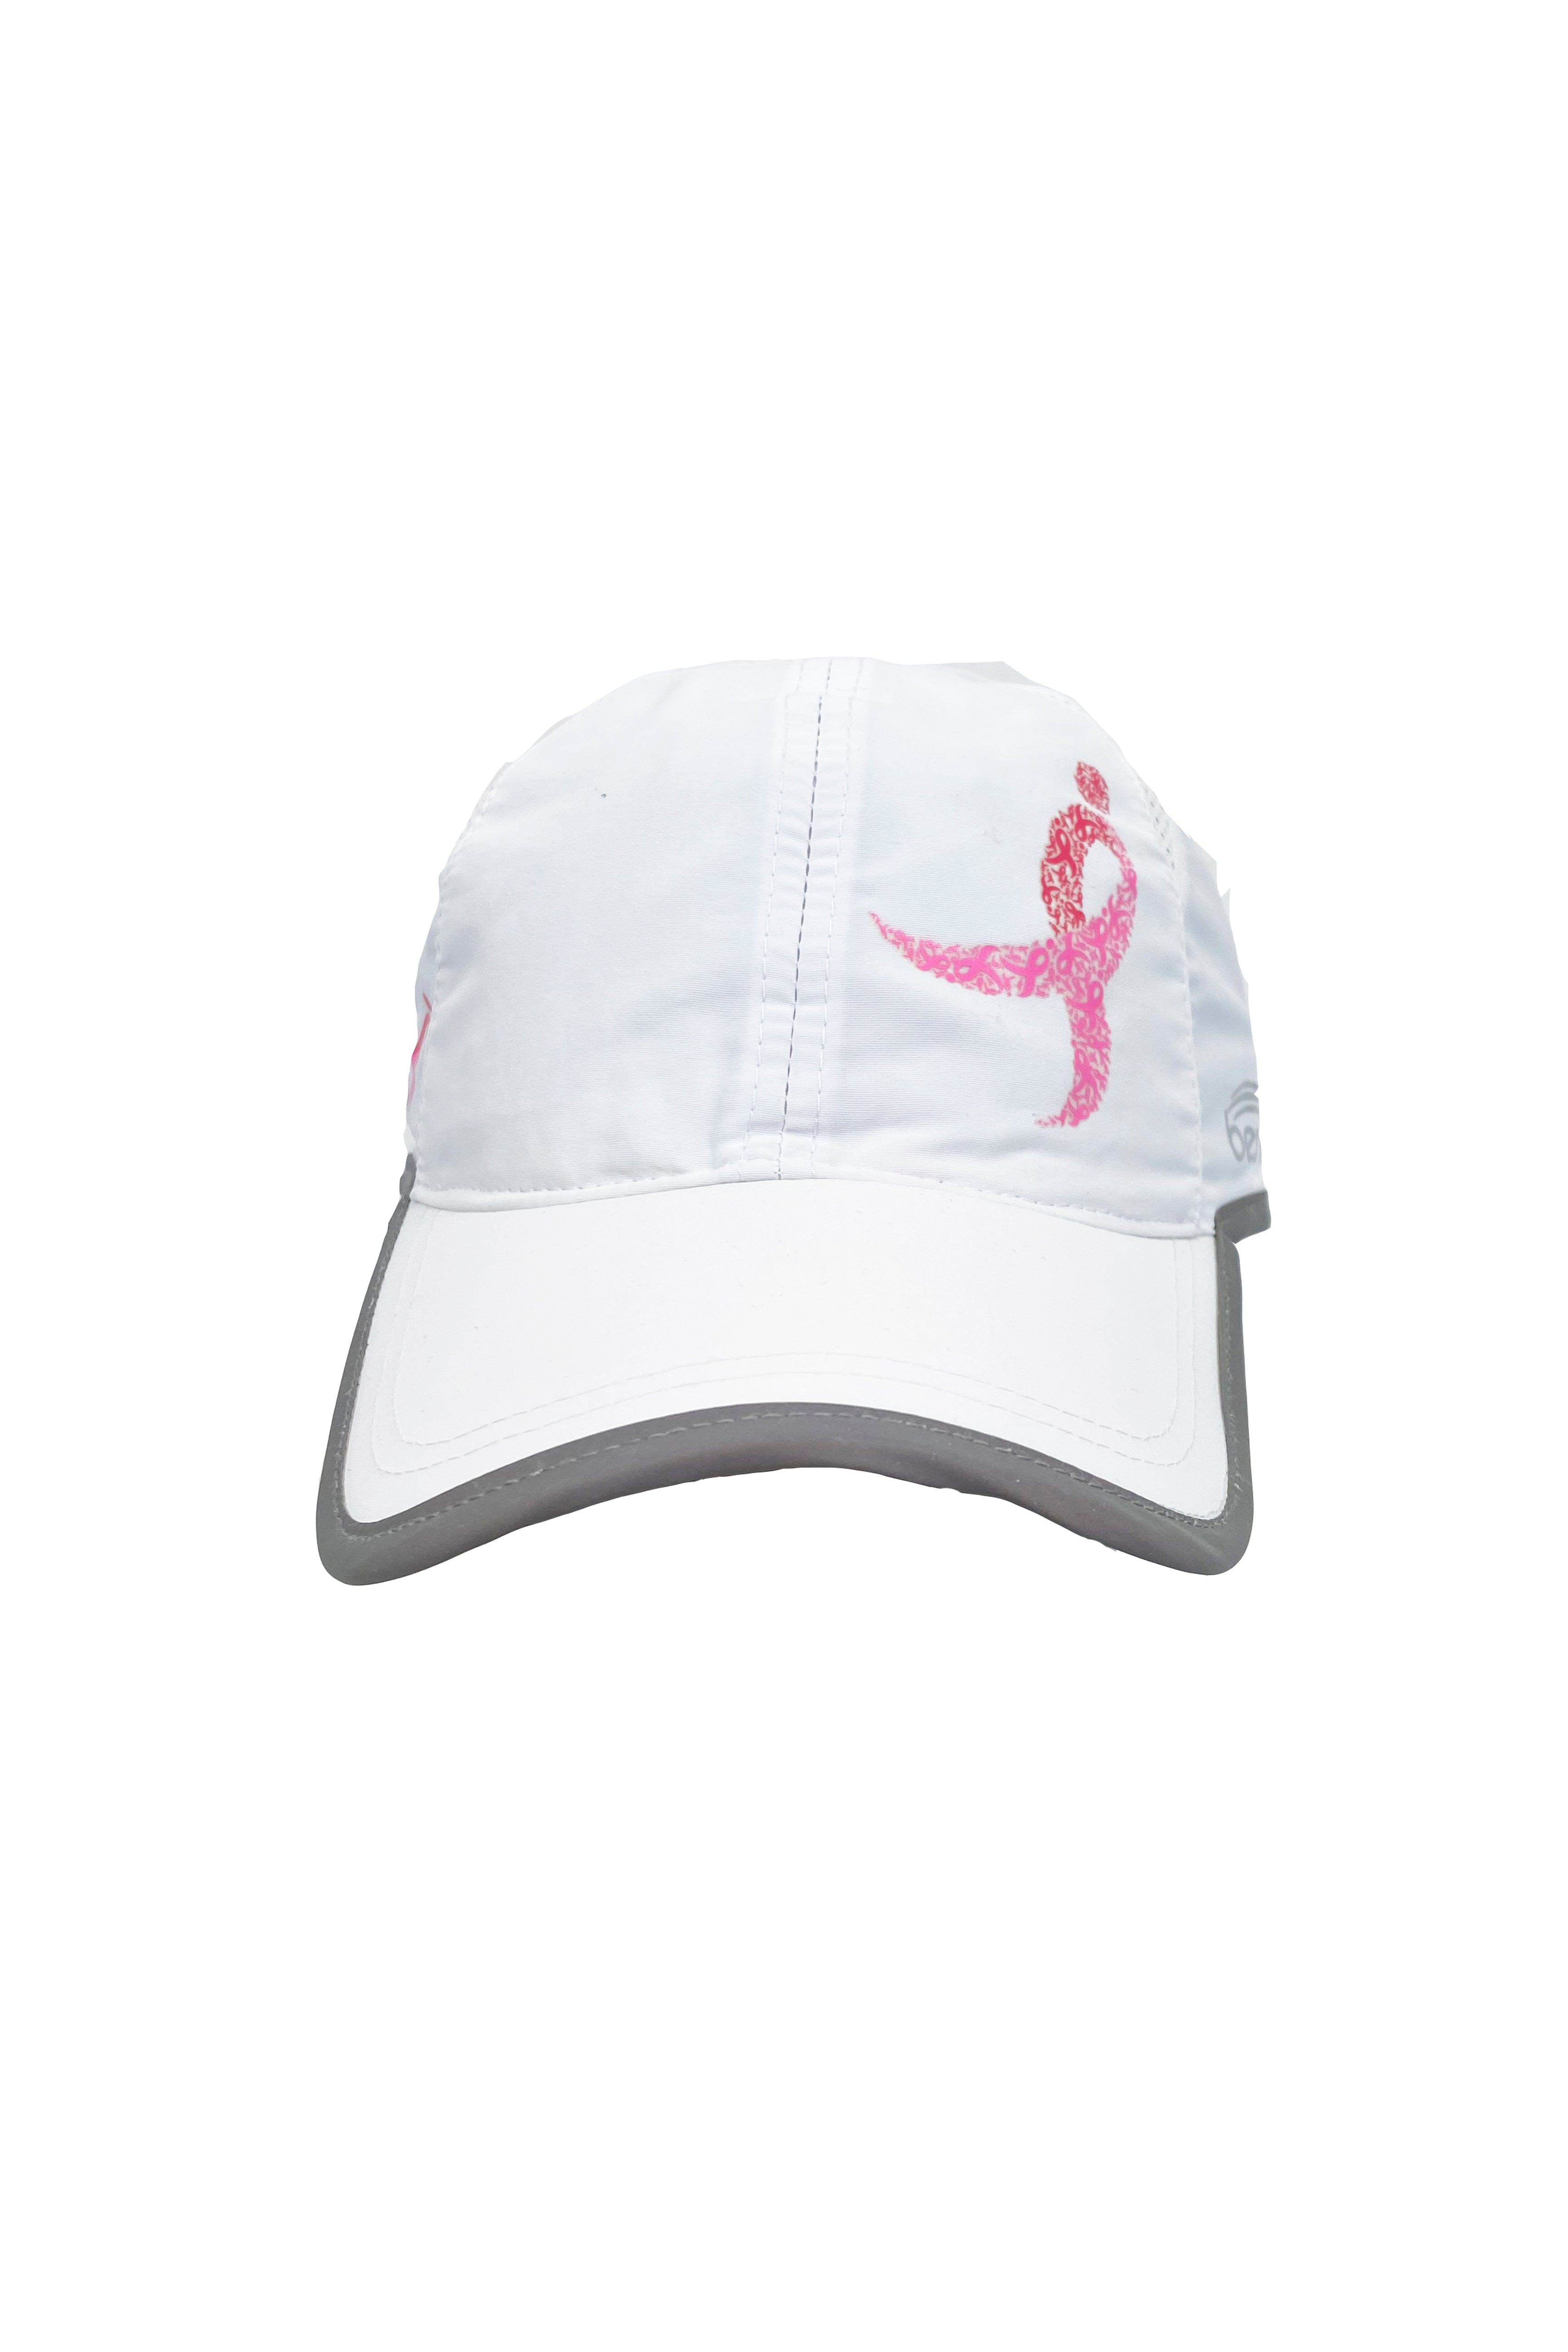 7406 - Komen Columbus Pink Ribbon Running Hat/White